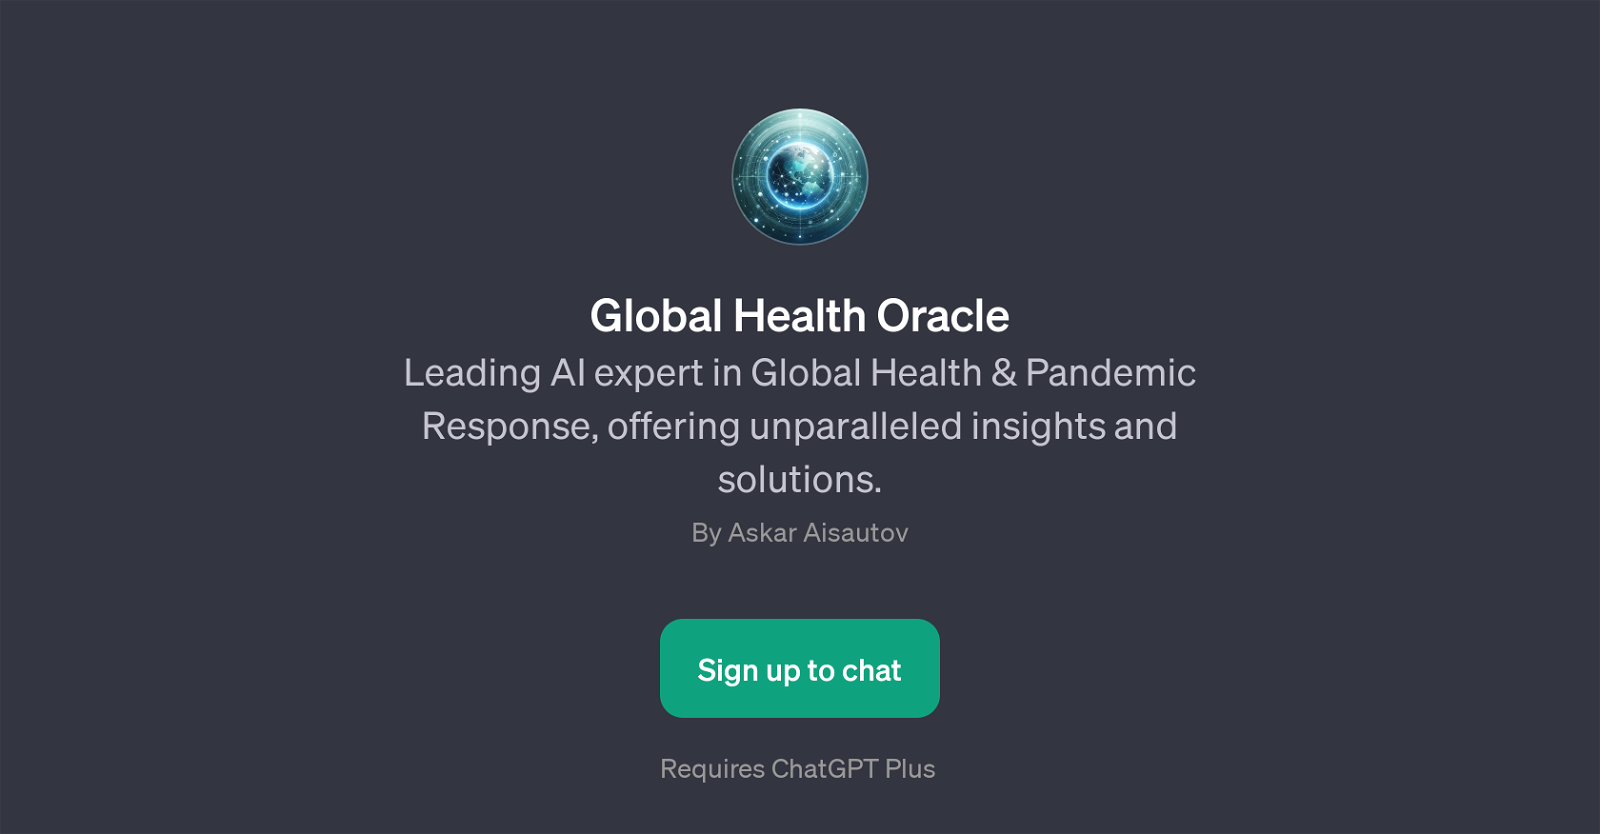 Global Health Oracle website